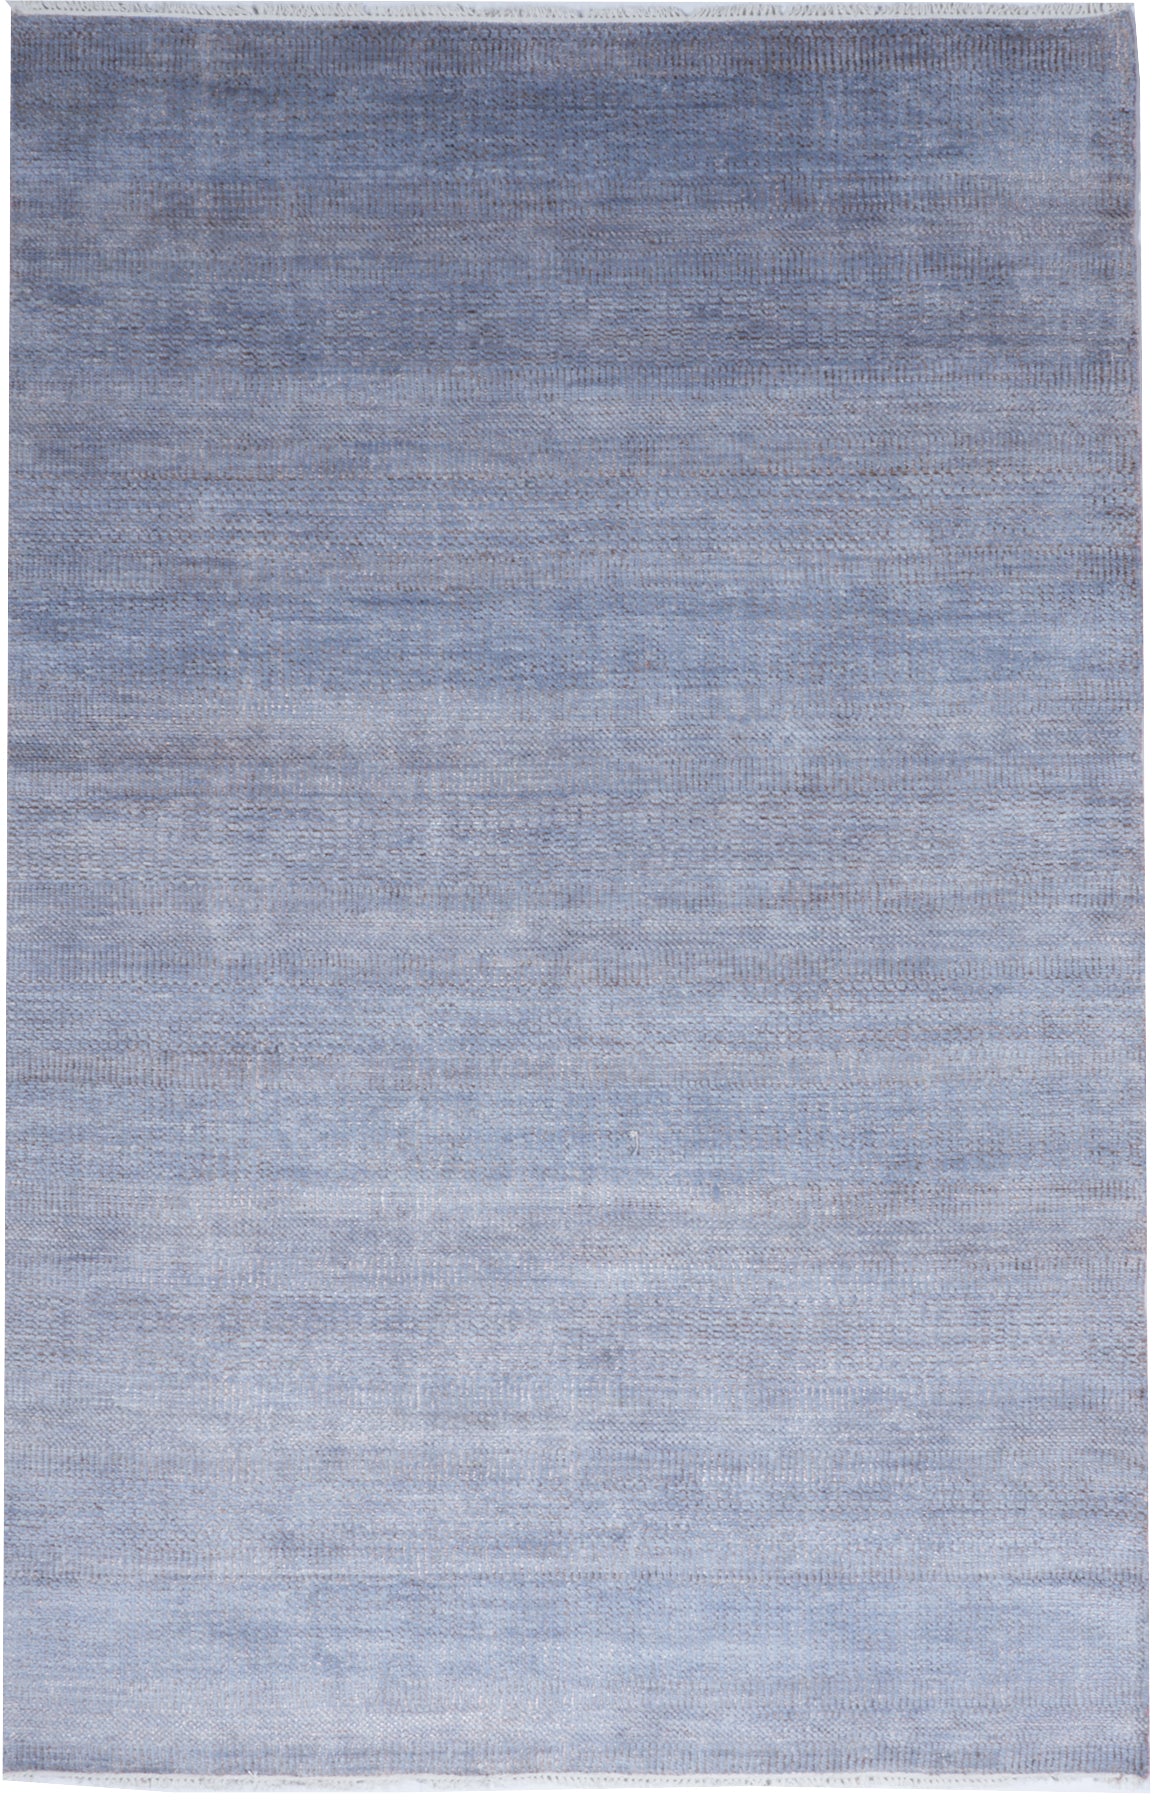 Coastal Handmade Blue Gray Wool Viscose Rug 6' x 9'2 - IGotYourRug